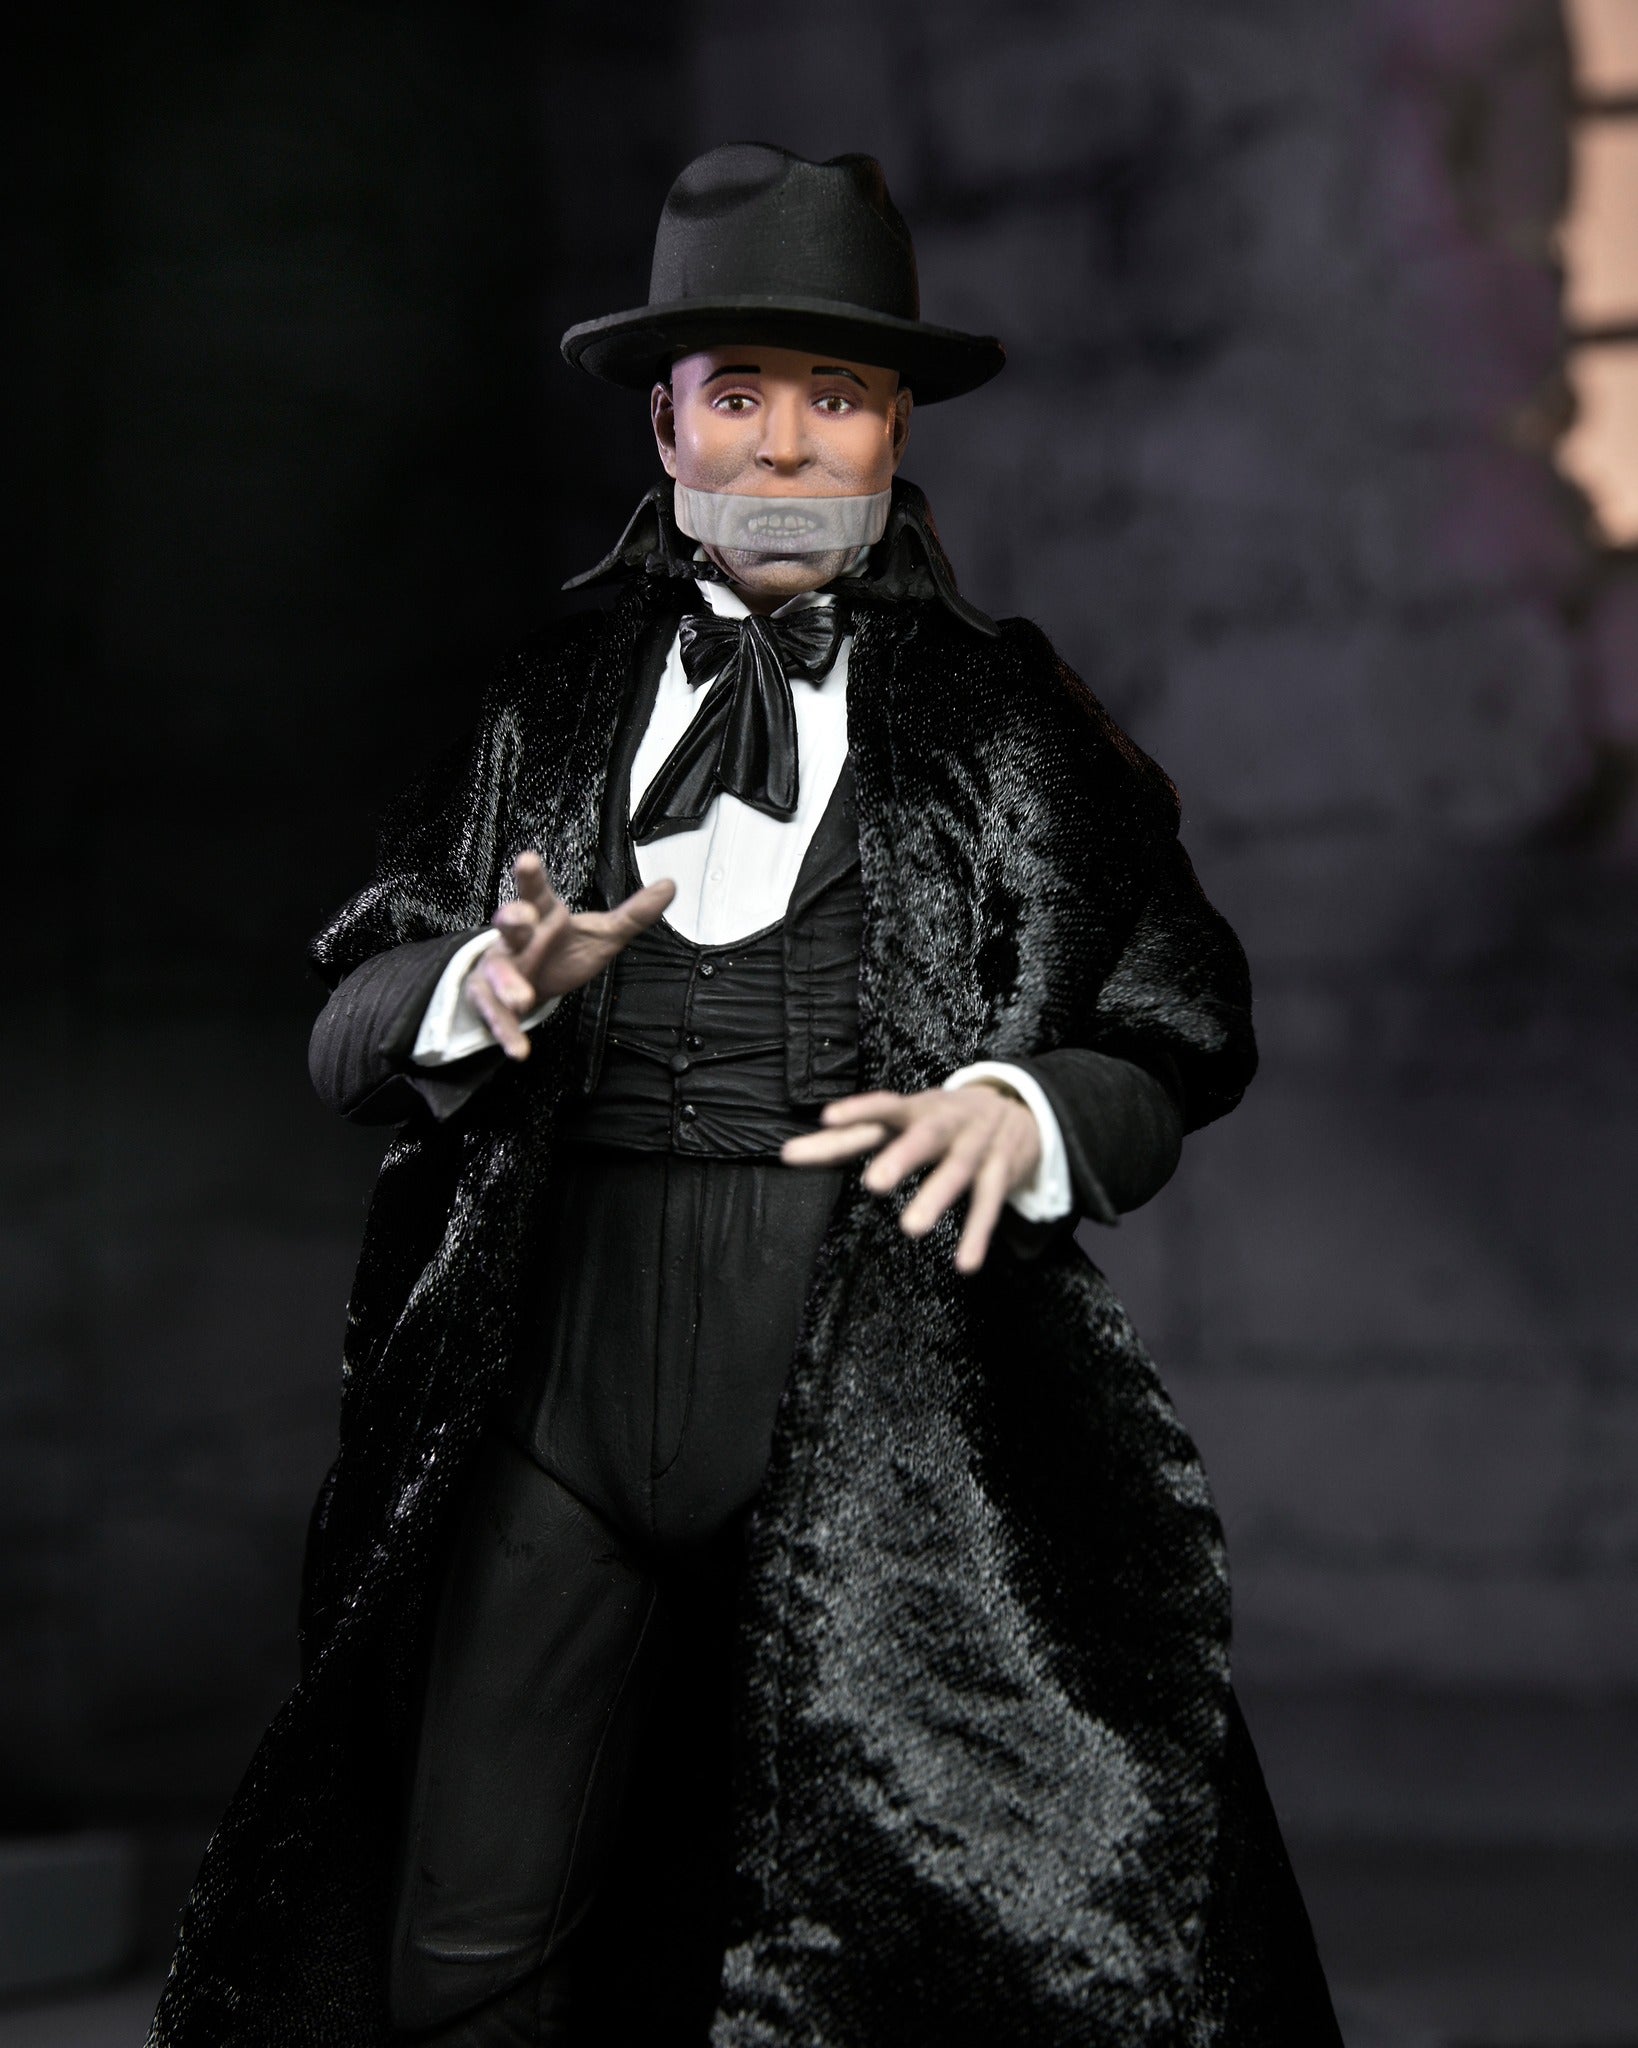 Neca Universal Monsters The Phantom Of The Opera Figures Com